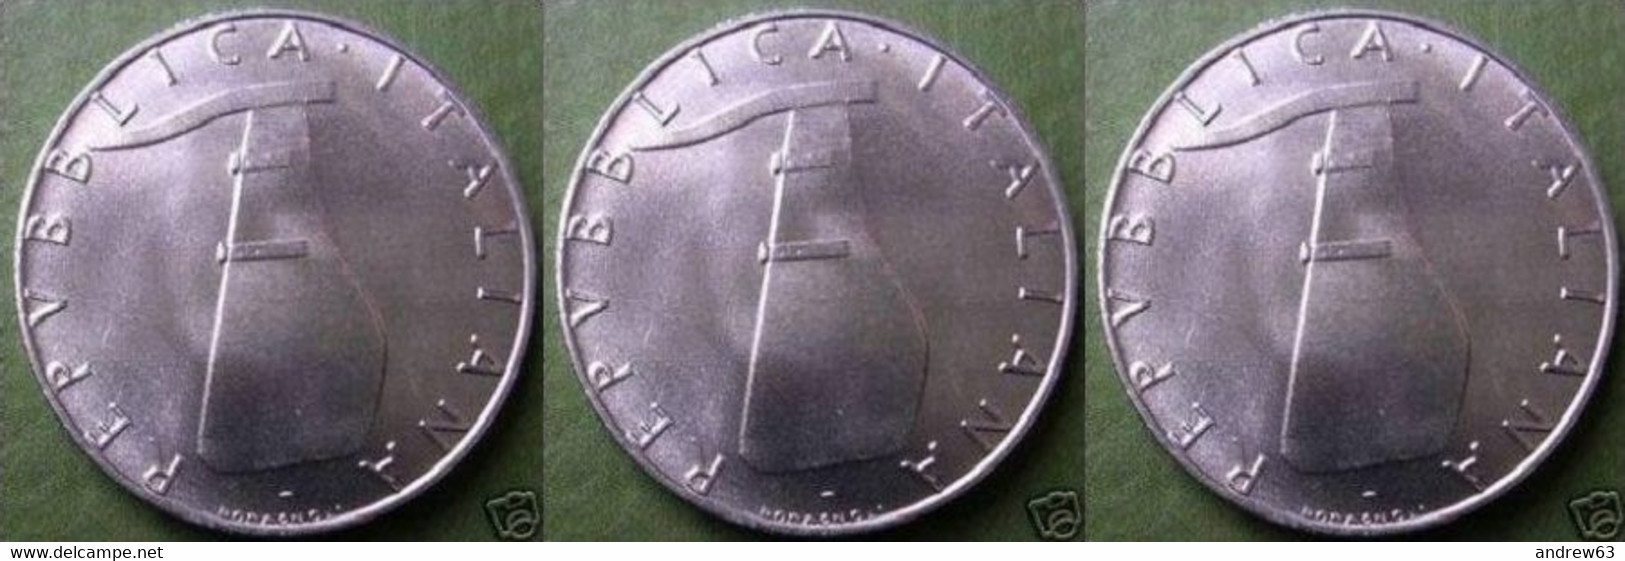 ITALIA - Lire 5 1975 - FDC/Unc Da Rotolino/from Roll 3 Monete/3 Coins - 5 Lire